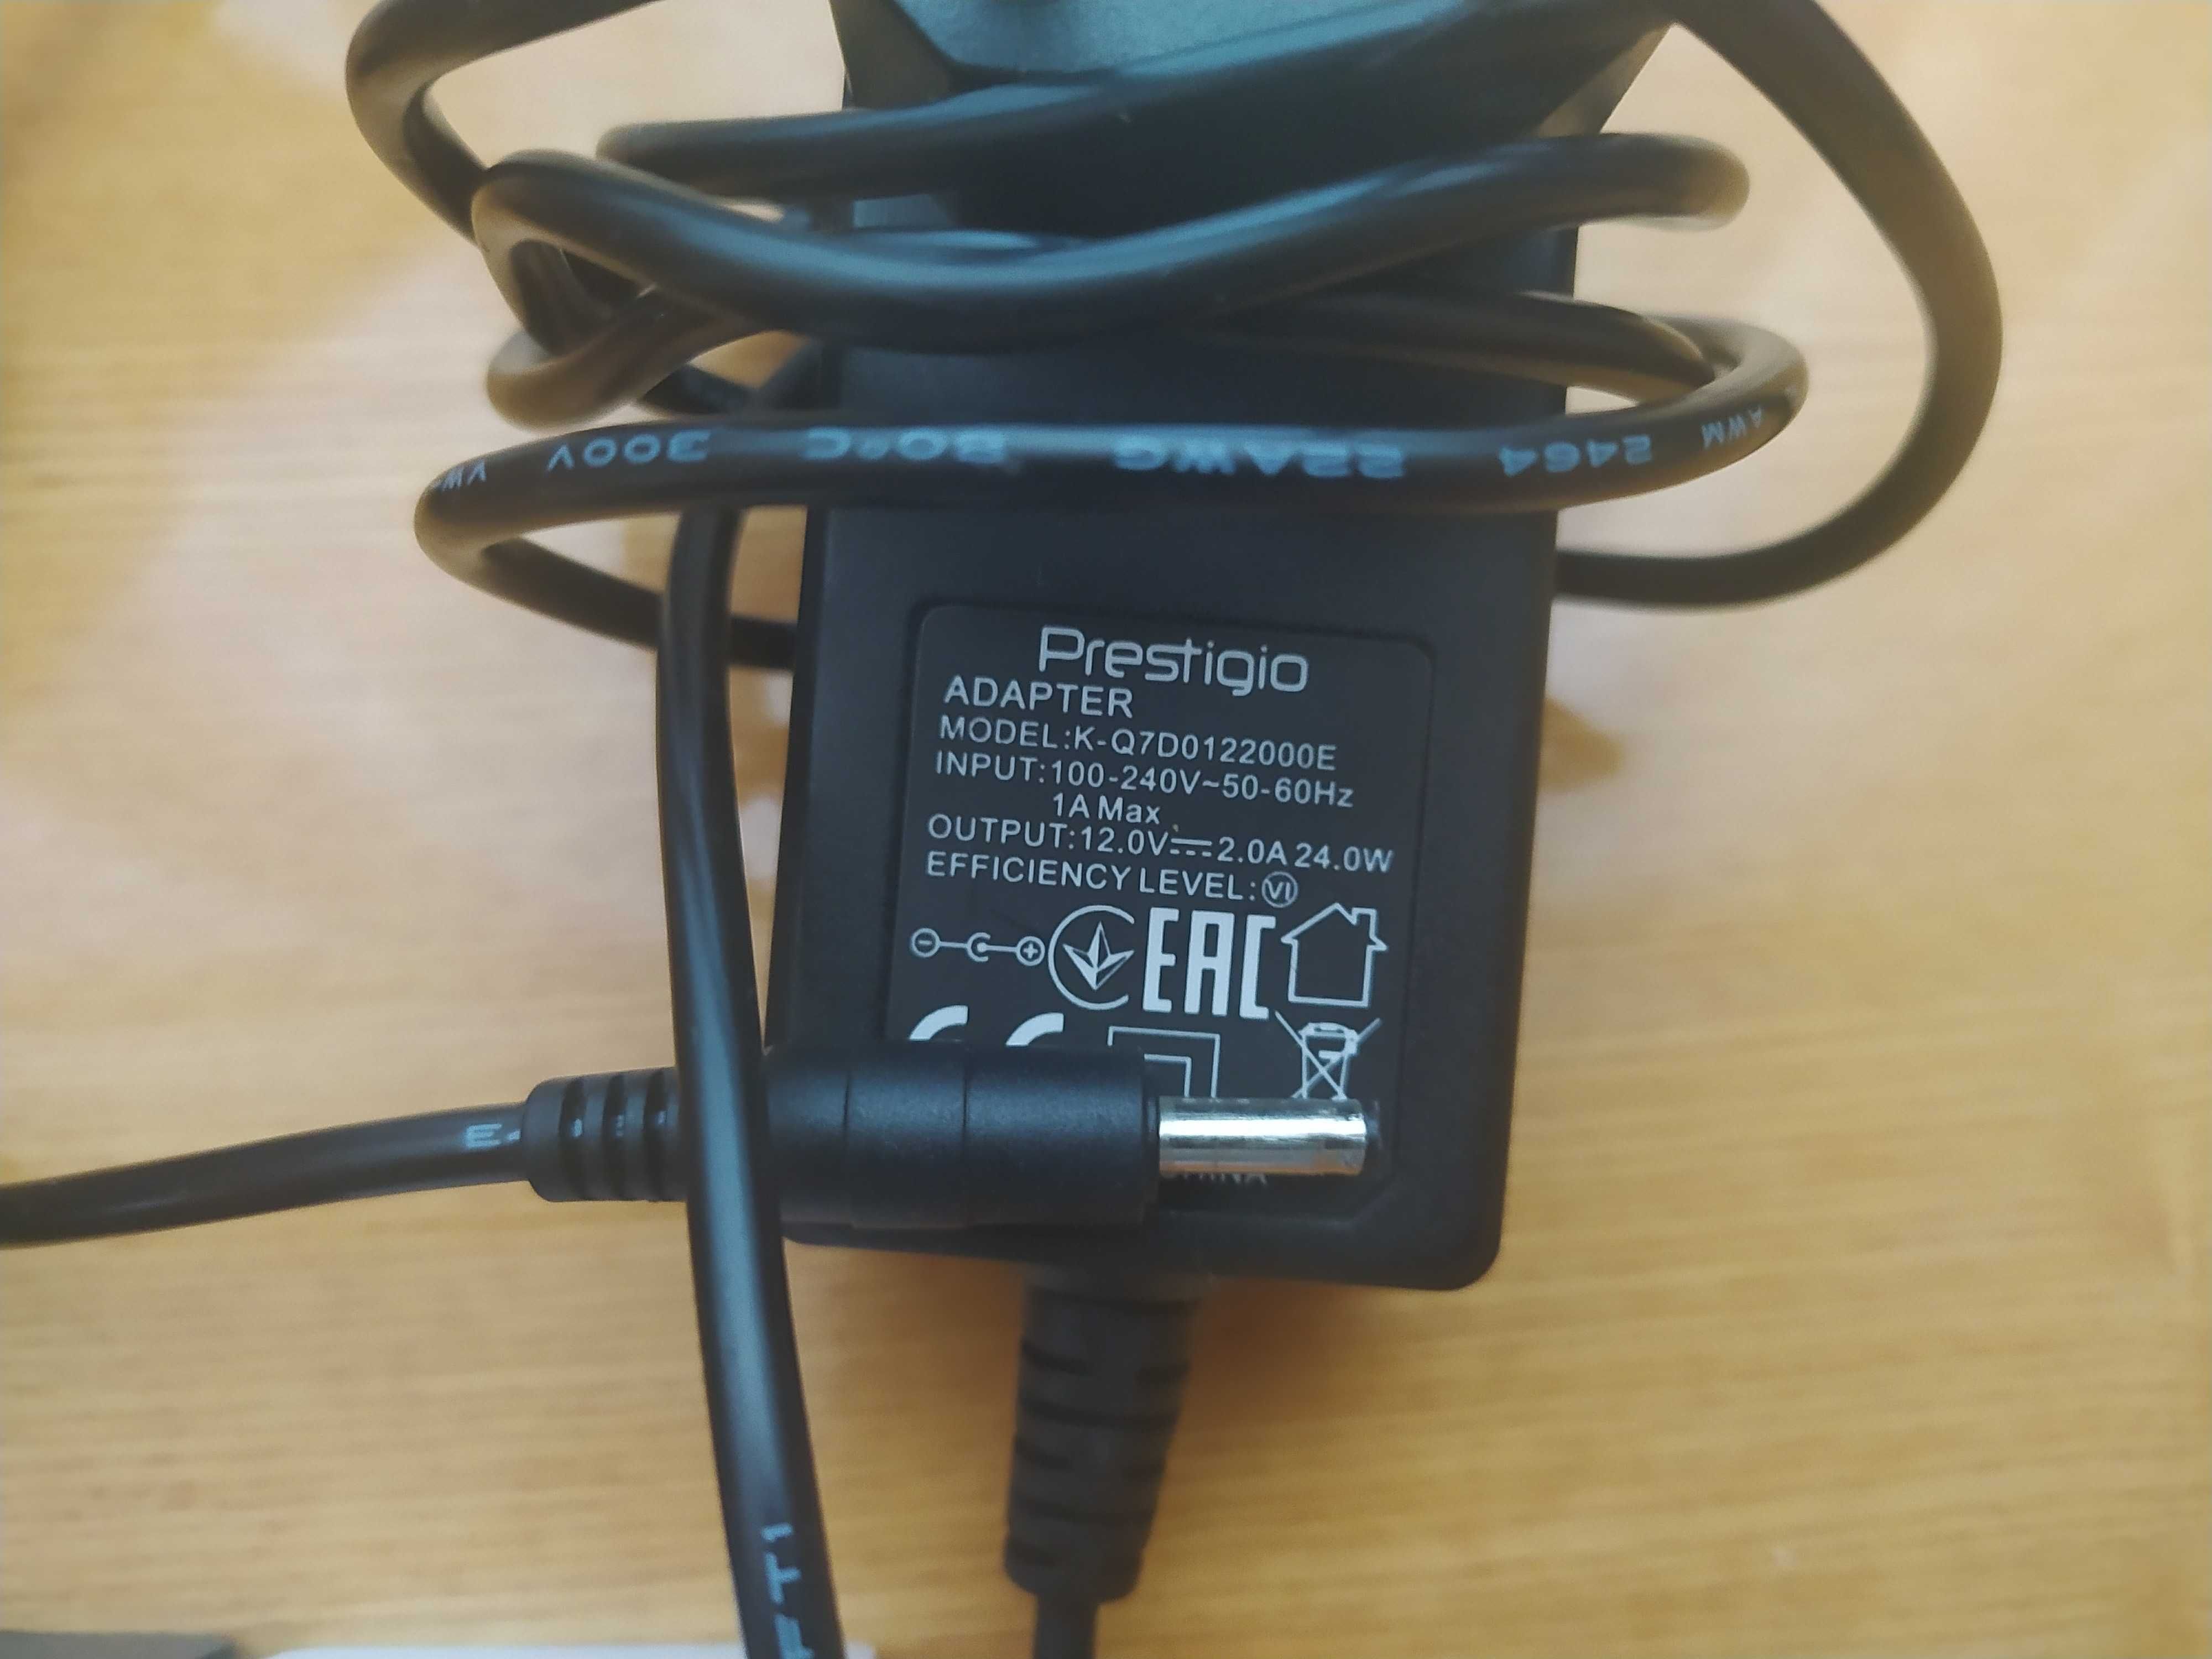 Зарядка USB TypeC кабель microUSB